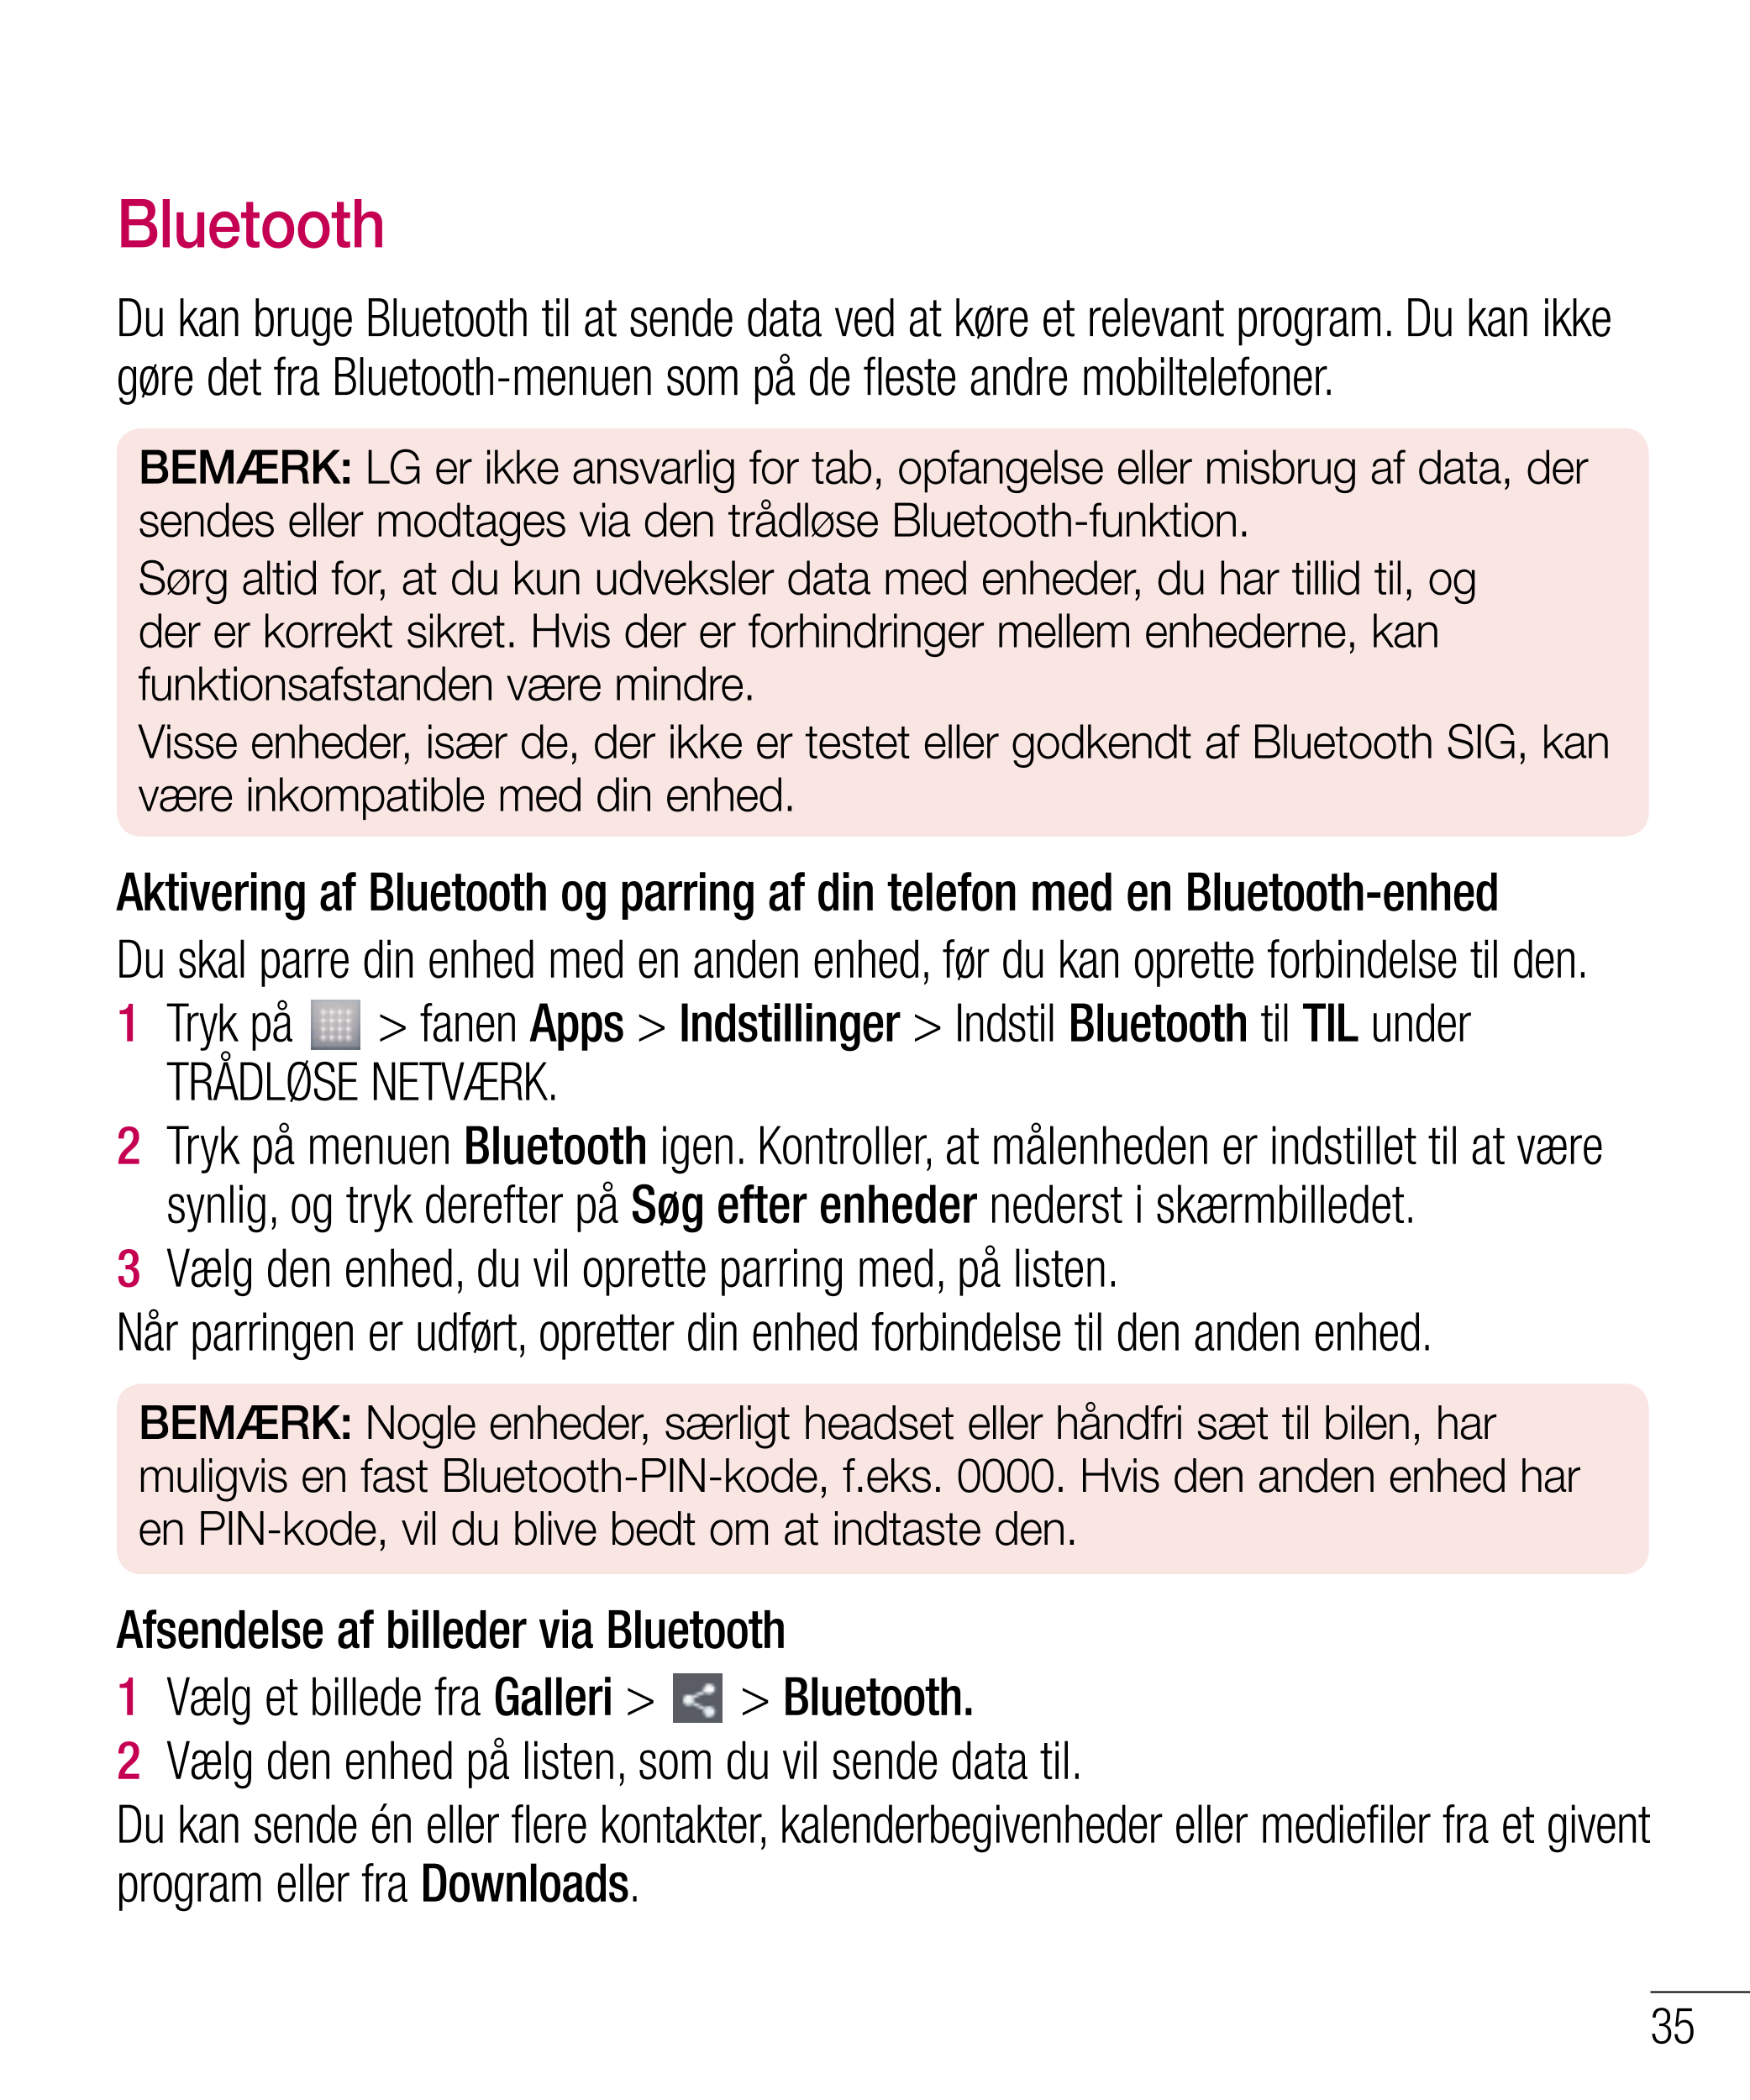 Bluetooth
Du kan bruge Bluetooth til at sende data ved at køre et relevant program. Du kan ikke 
gøre det fra Bluetooth-menuen s